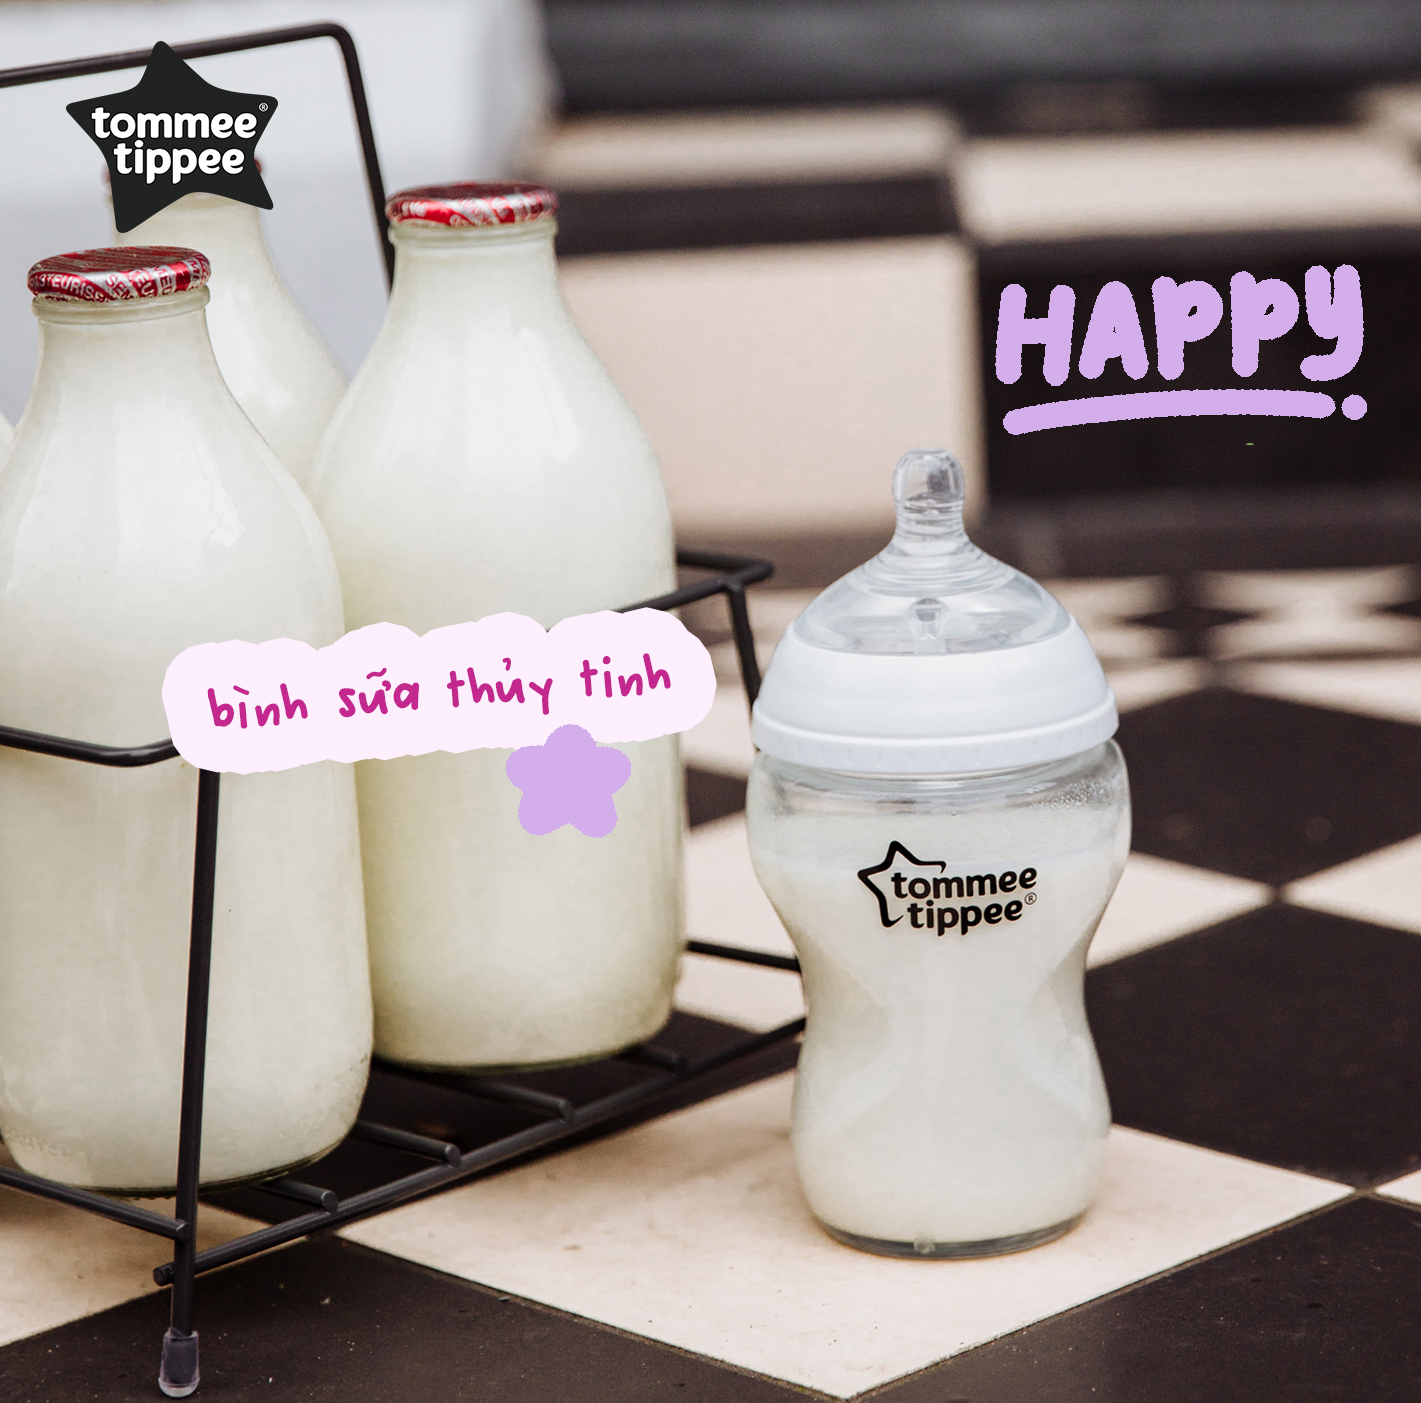 COMBO Bình sữa thuỷ tinh ty siêu mềm tự nhiên Tommee Tippee 150ml & Bình sữa ty siêu mềm tự nhiên Tommee Tippee 150ml